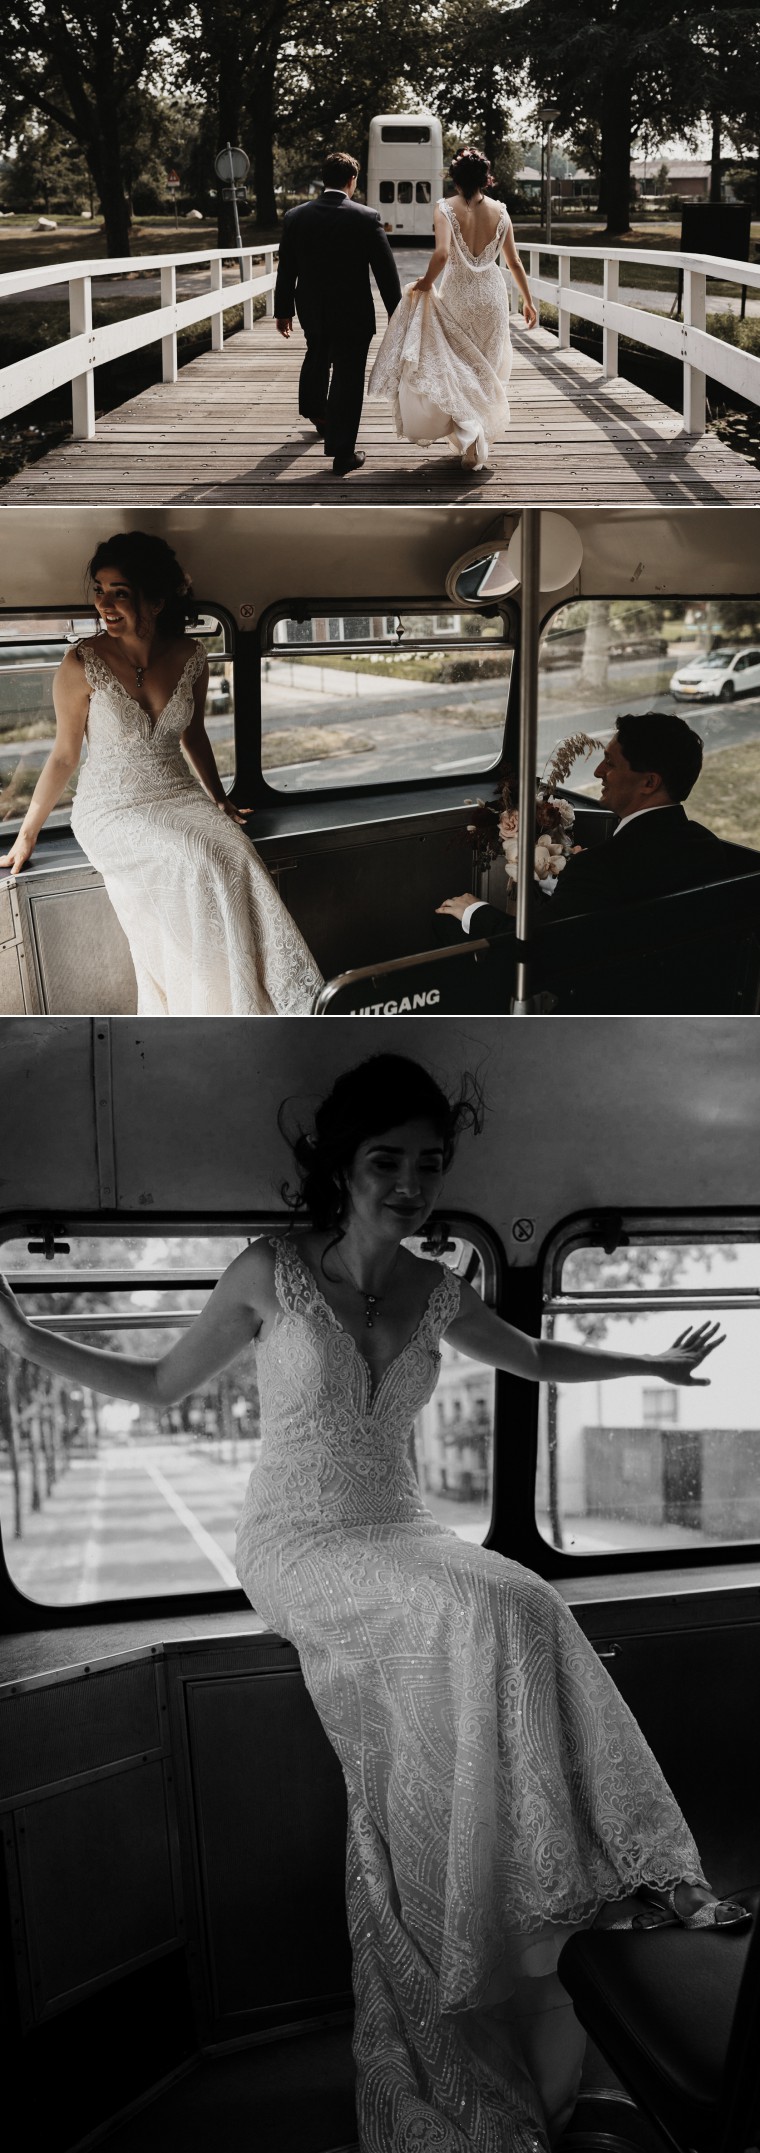 met de bus naar bruiloft